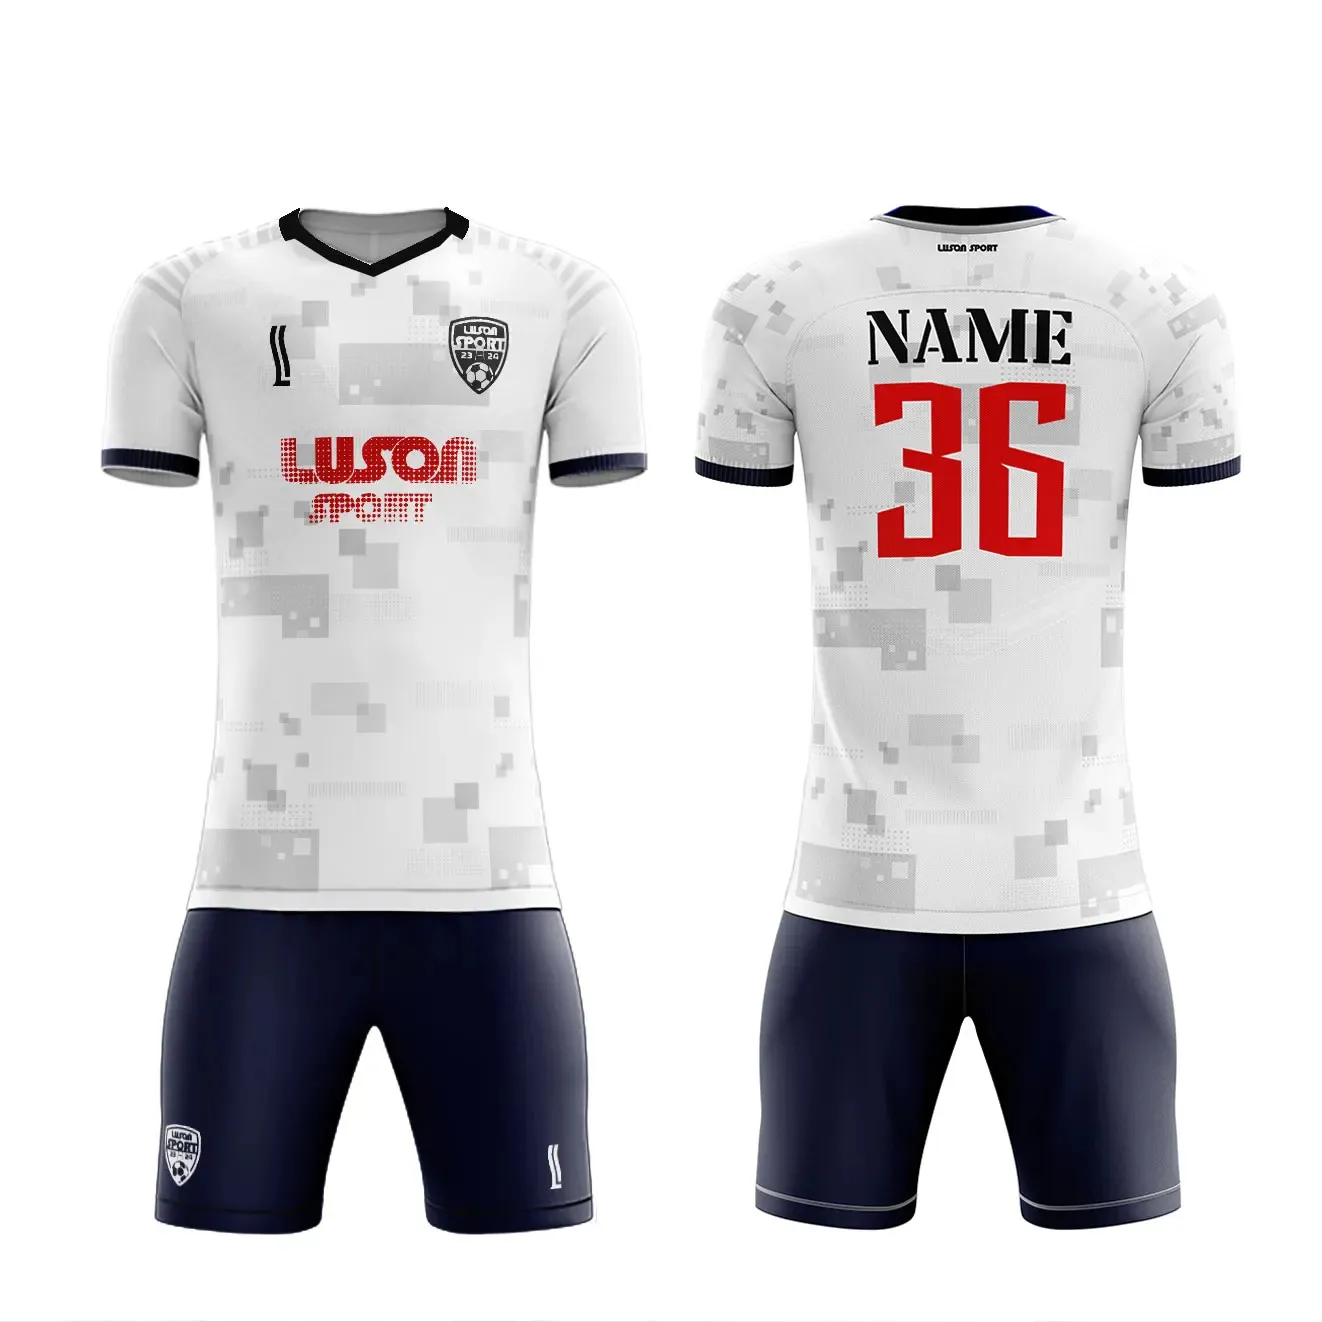 LUSON kundenspezifische Designs verfügbar Verein Fußball Fußballtrikots individuelles Logo und digital bedruckte Fußballtrikots